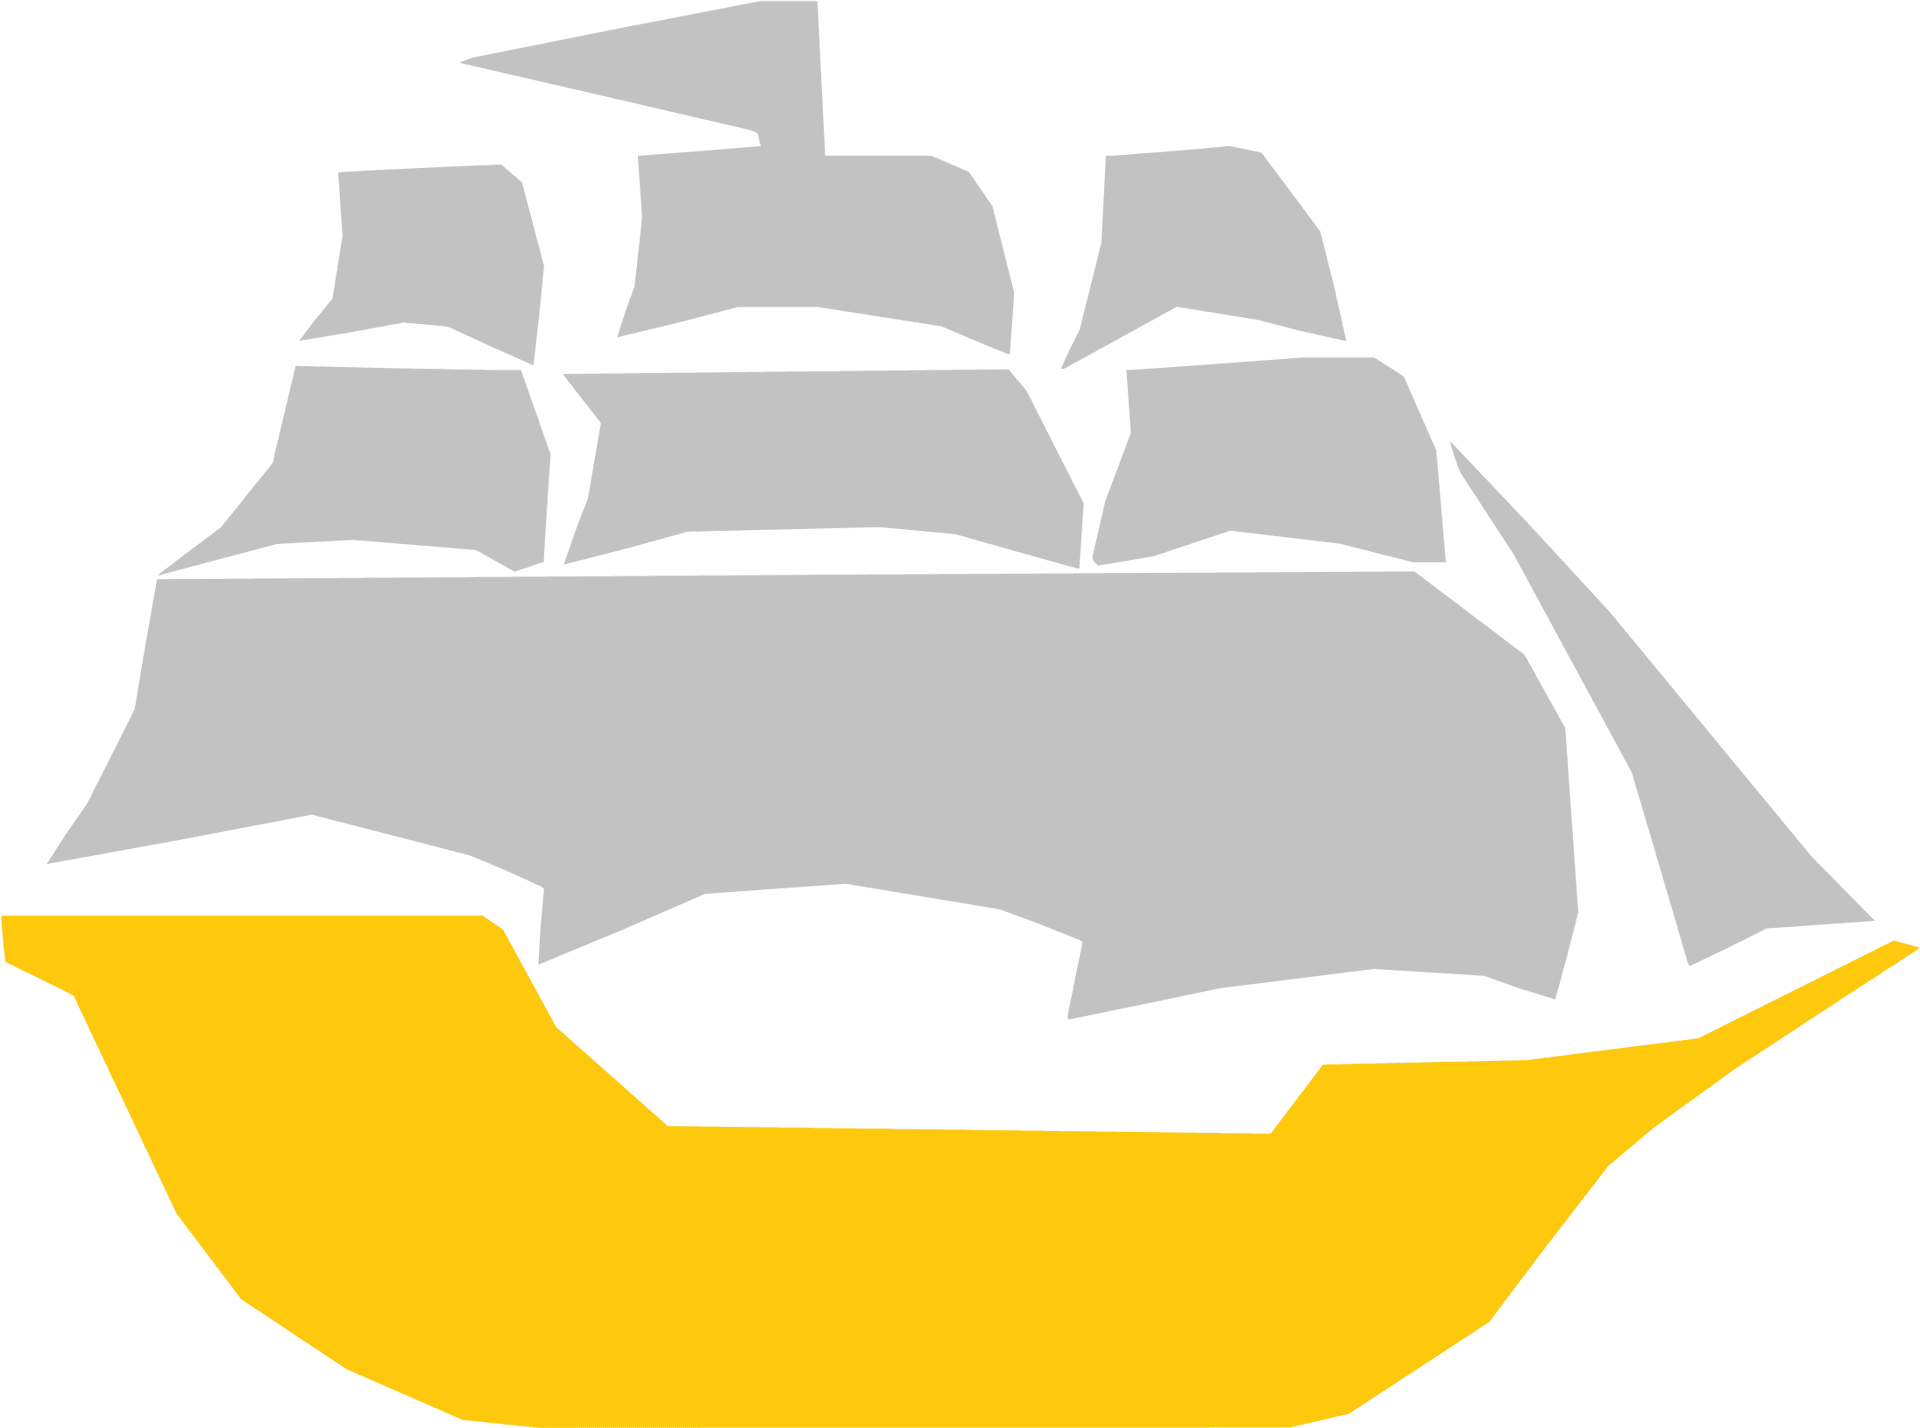 Yellowand Grey Sailboat Graphic PNG image